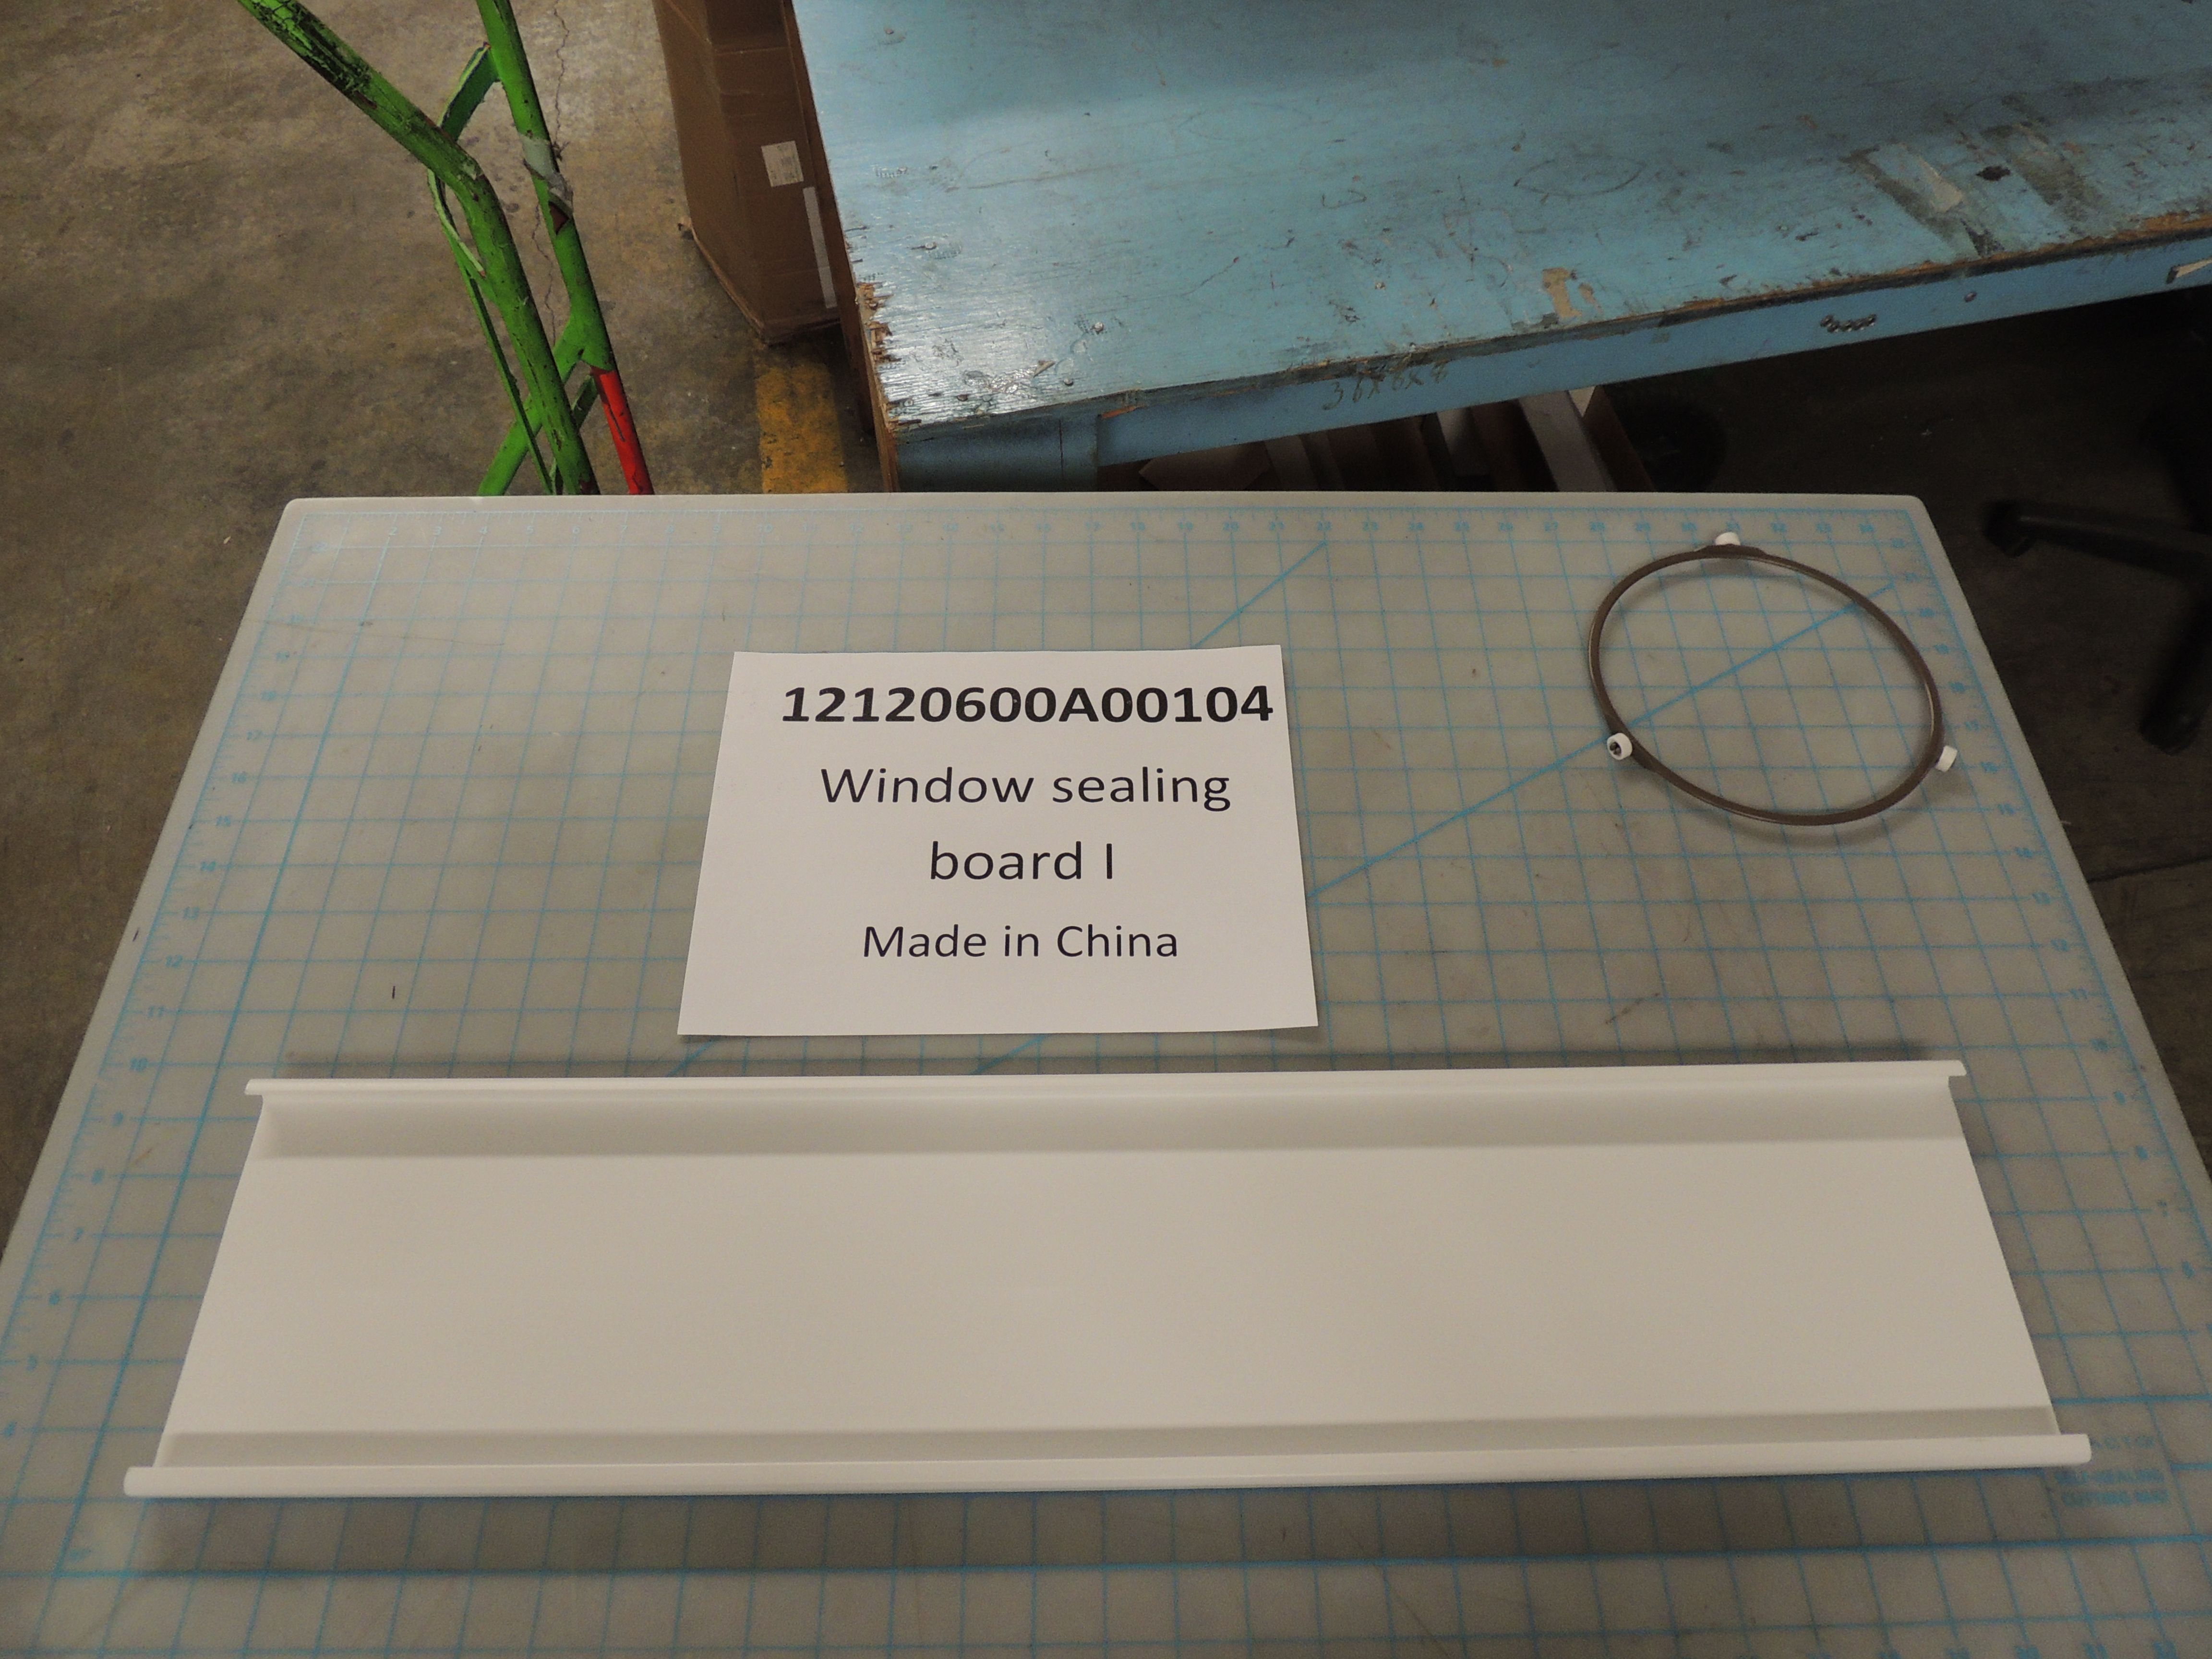 Window sealing board I